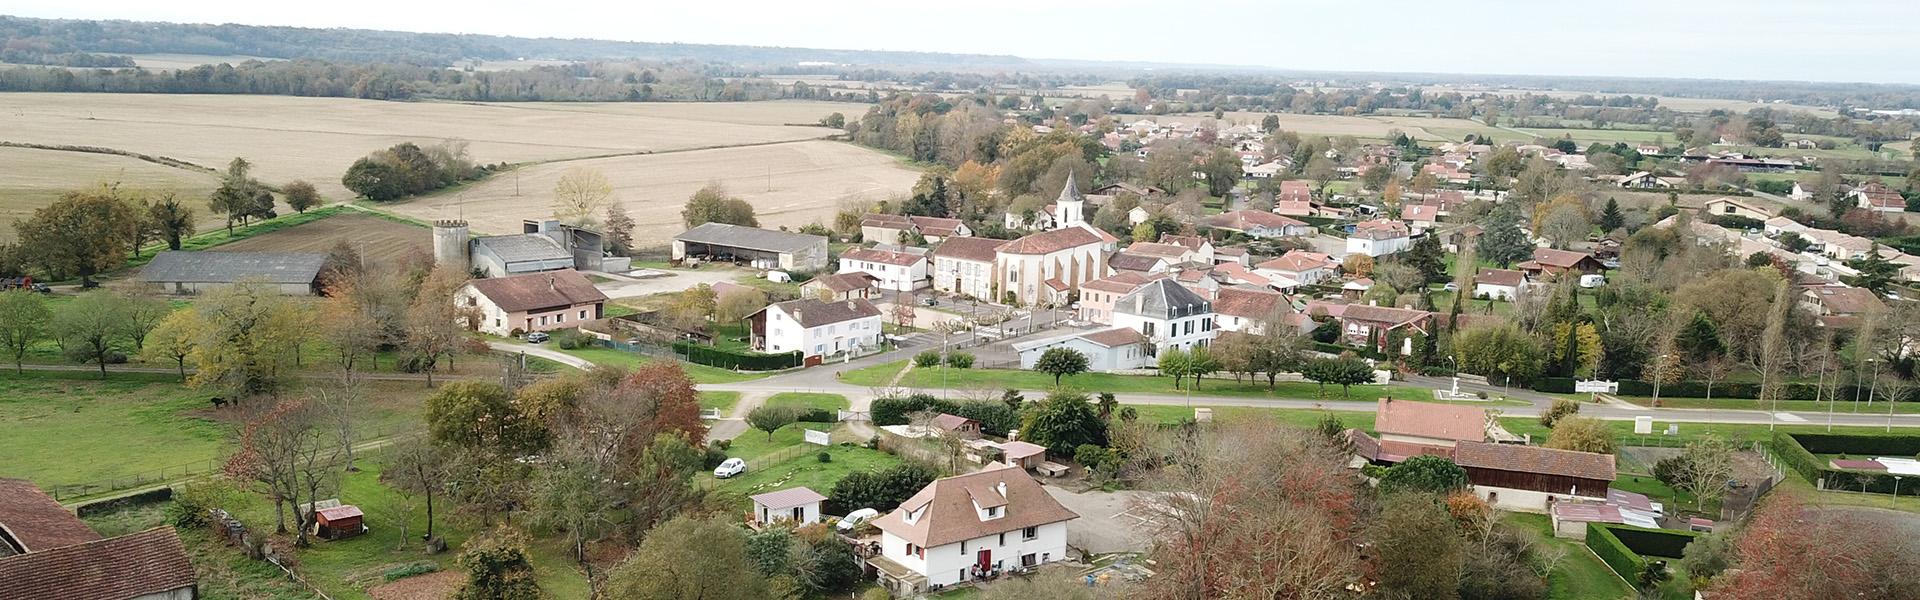 Commune de Saint-Maurice sur Adour